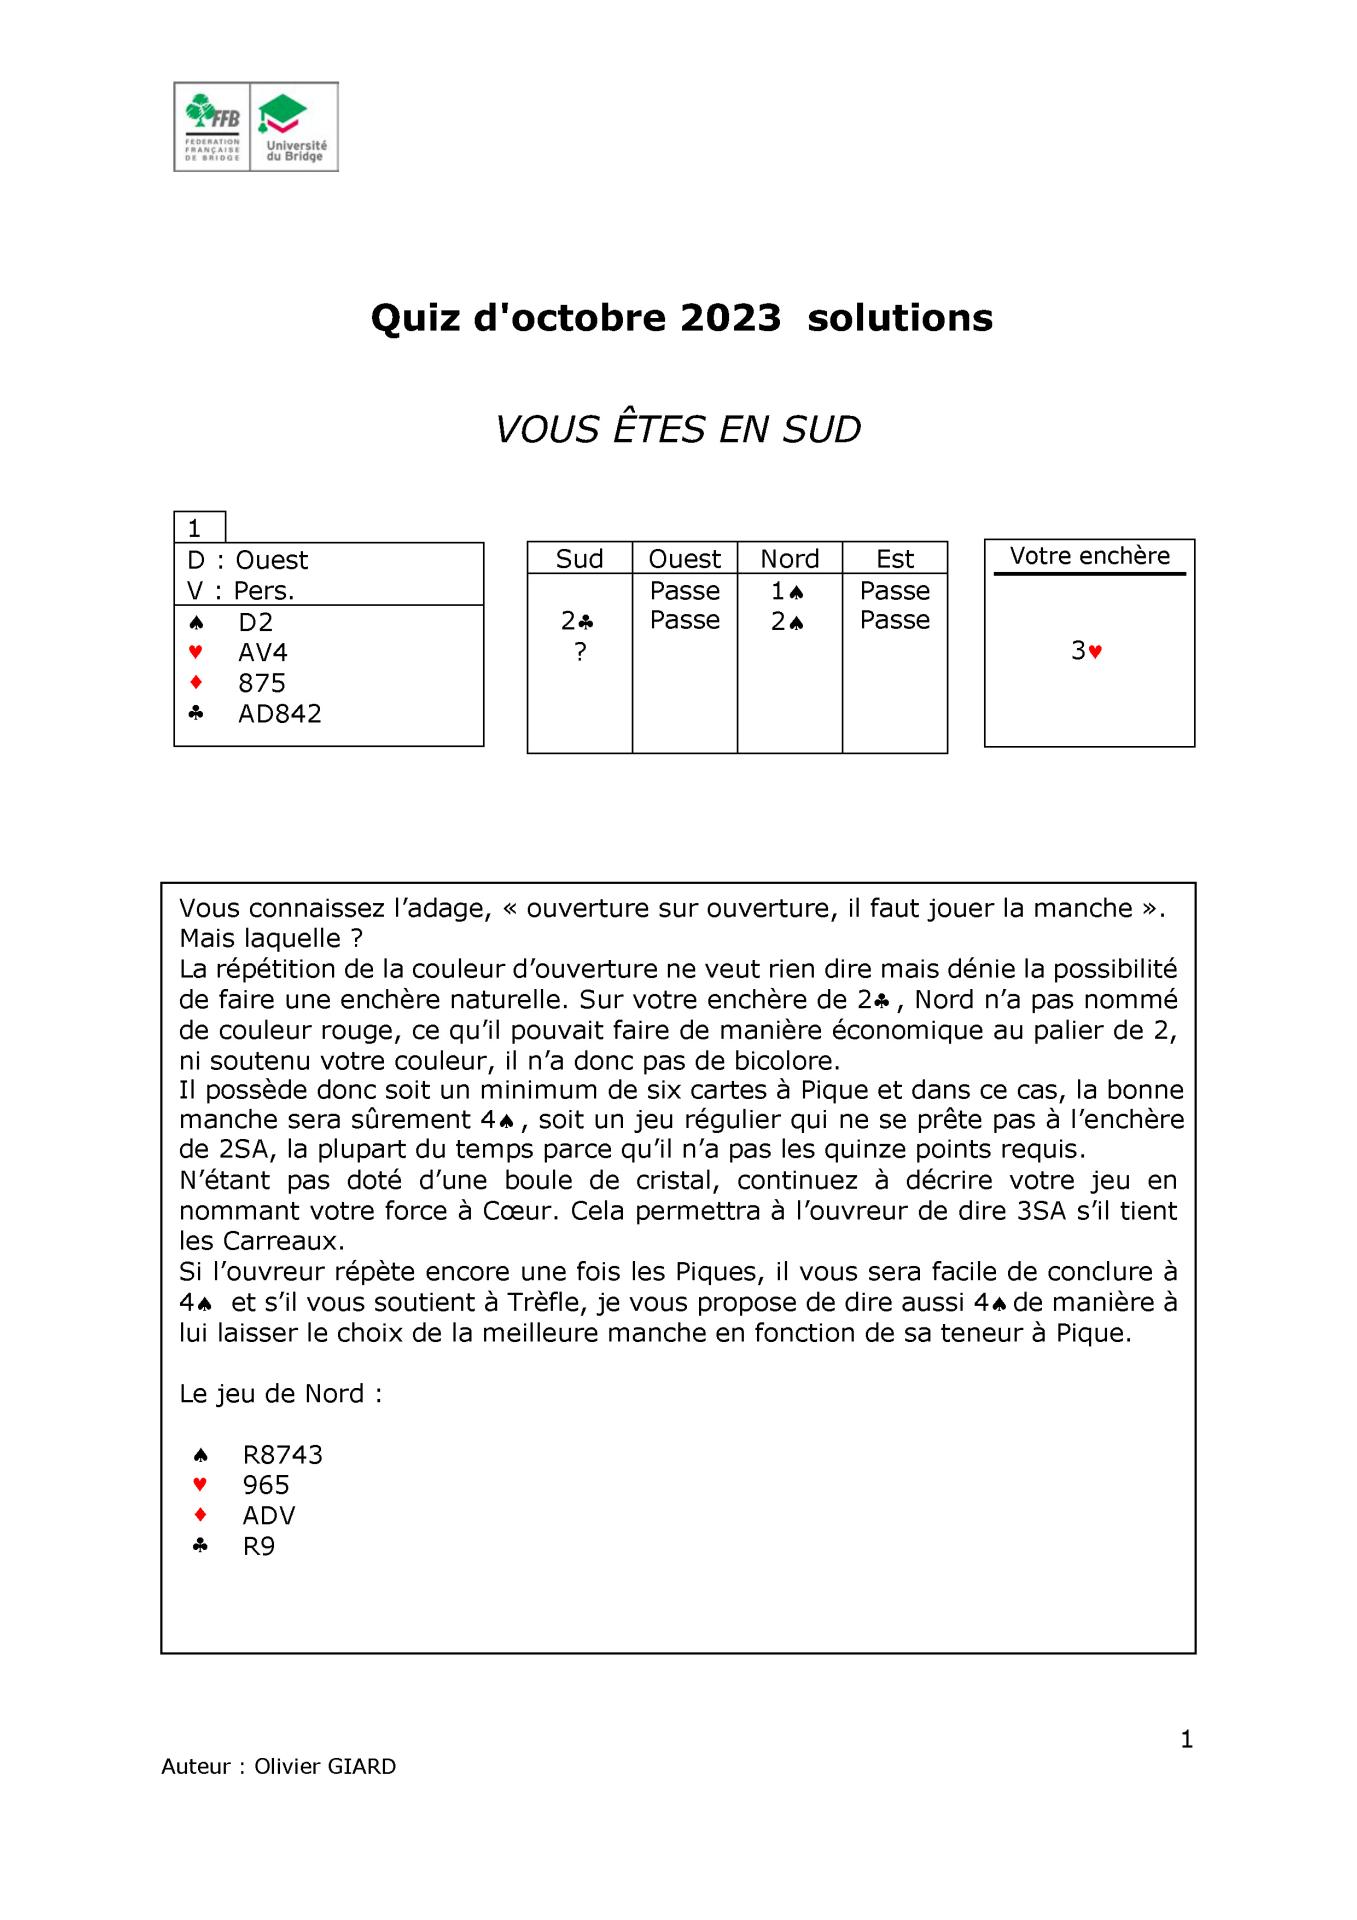 Formation continue des moniteurs solutions decembre 2020 page 1